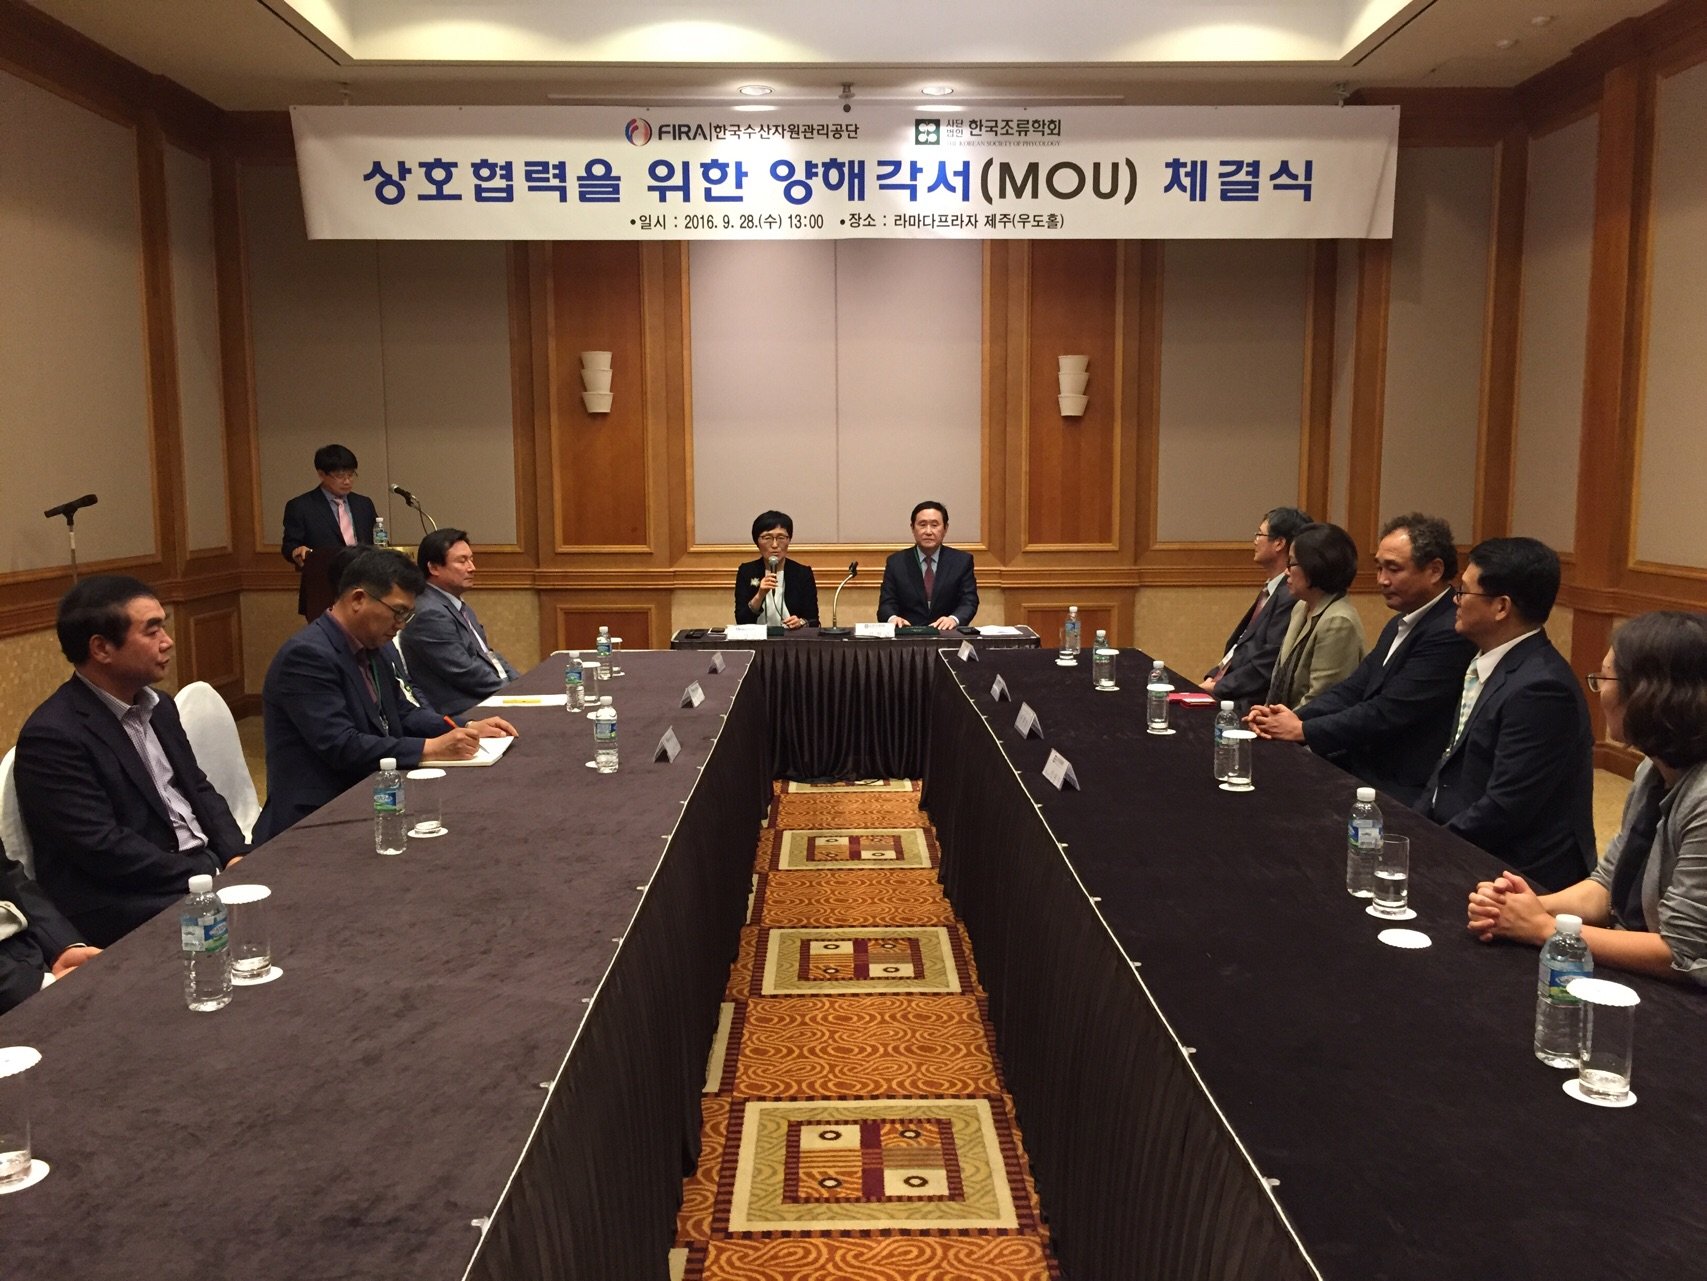 [2016.09.28.] FIRA - 한국조류학회 양해각서 체결